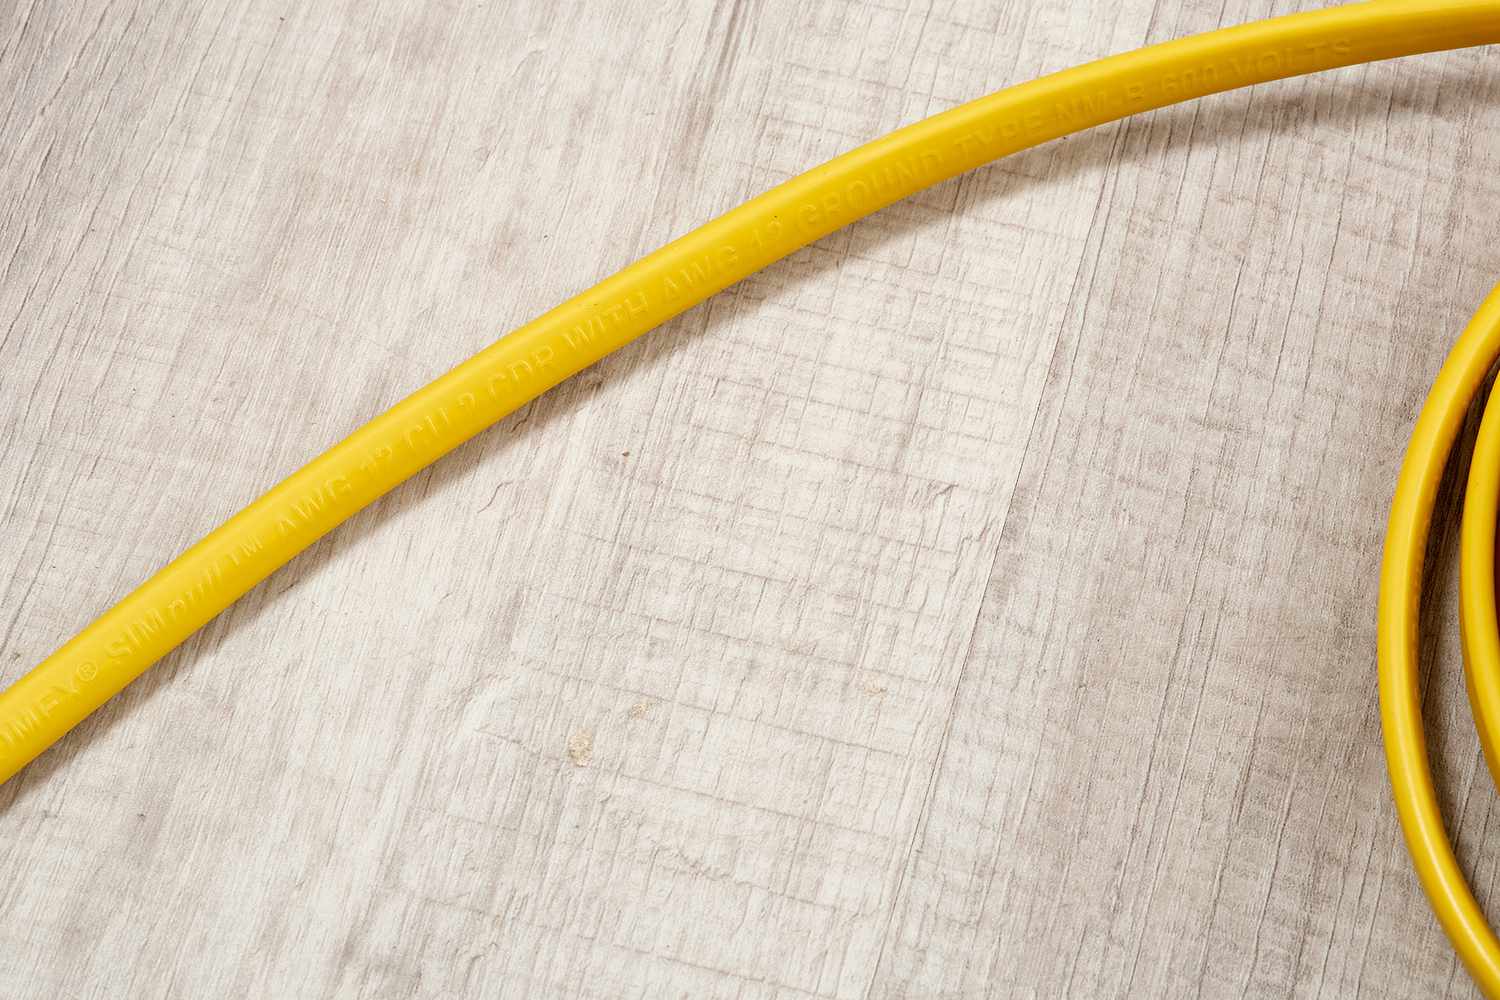 Calibre y tipo de cable indicados en el cale amarillo